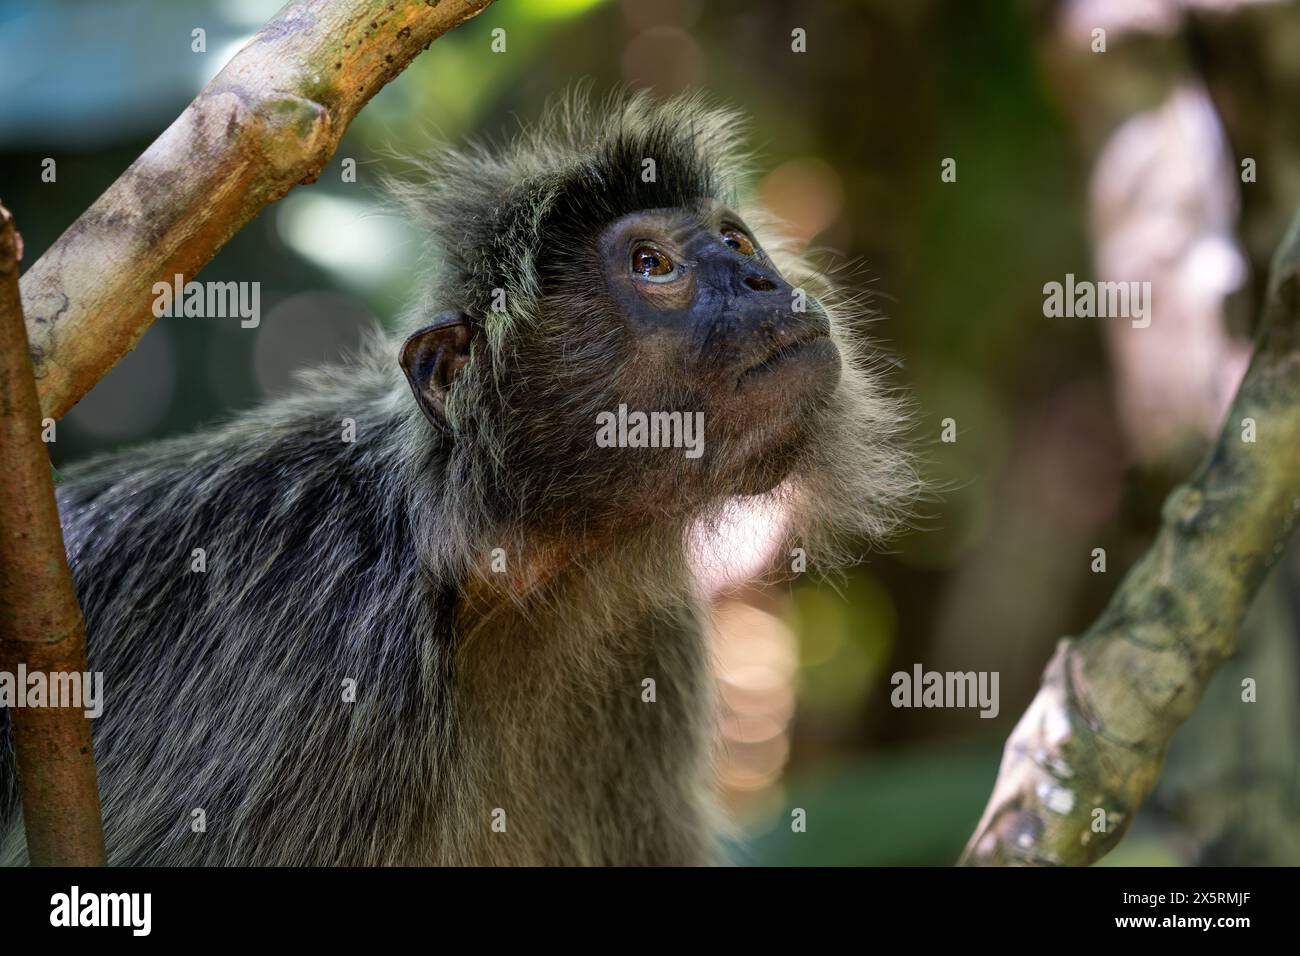 Silvered Leaf Monkey - Trachypithecus cristatus, wunderschöner Primat mit Silberfell aus Mangroven und Wäldern Südostasiens, Borneo, Malaysia. Stockfoto